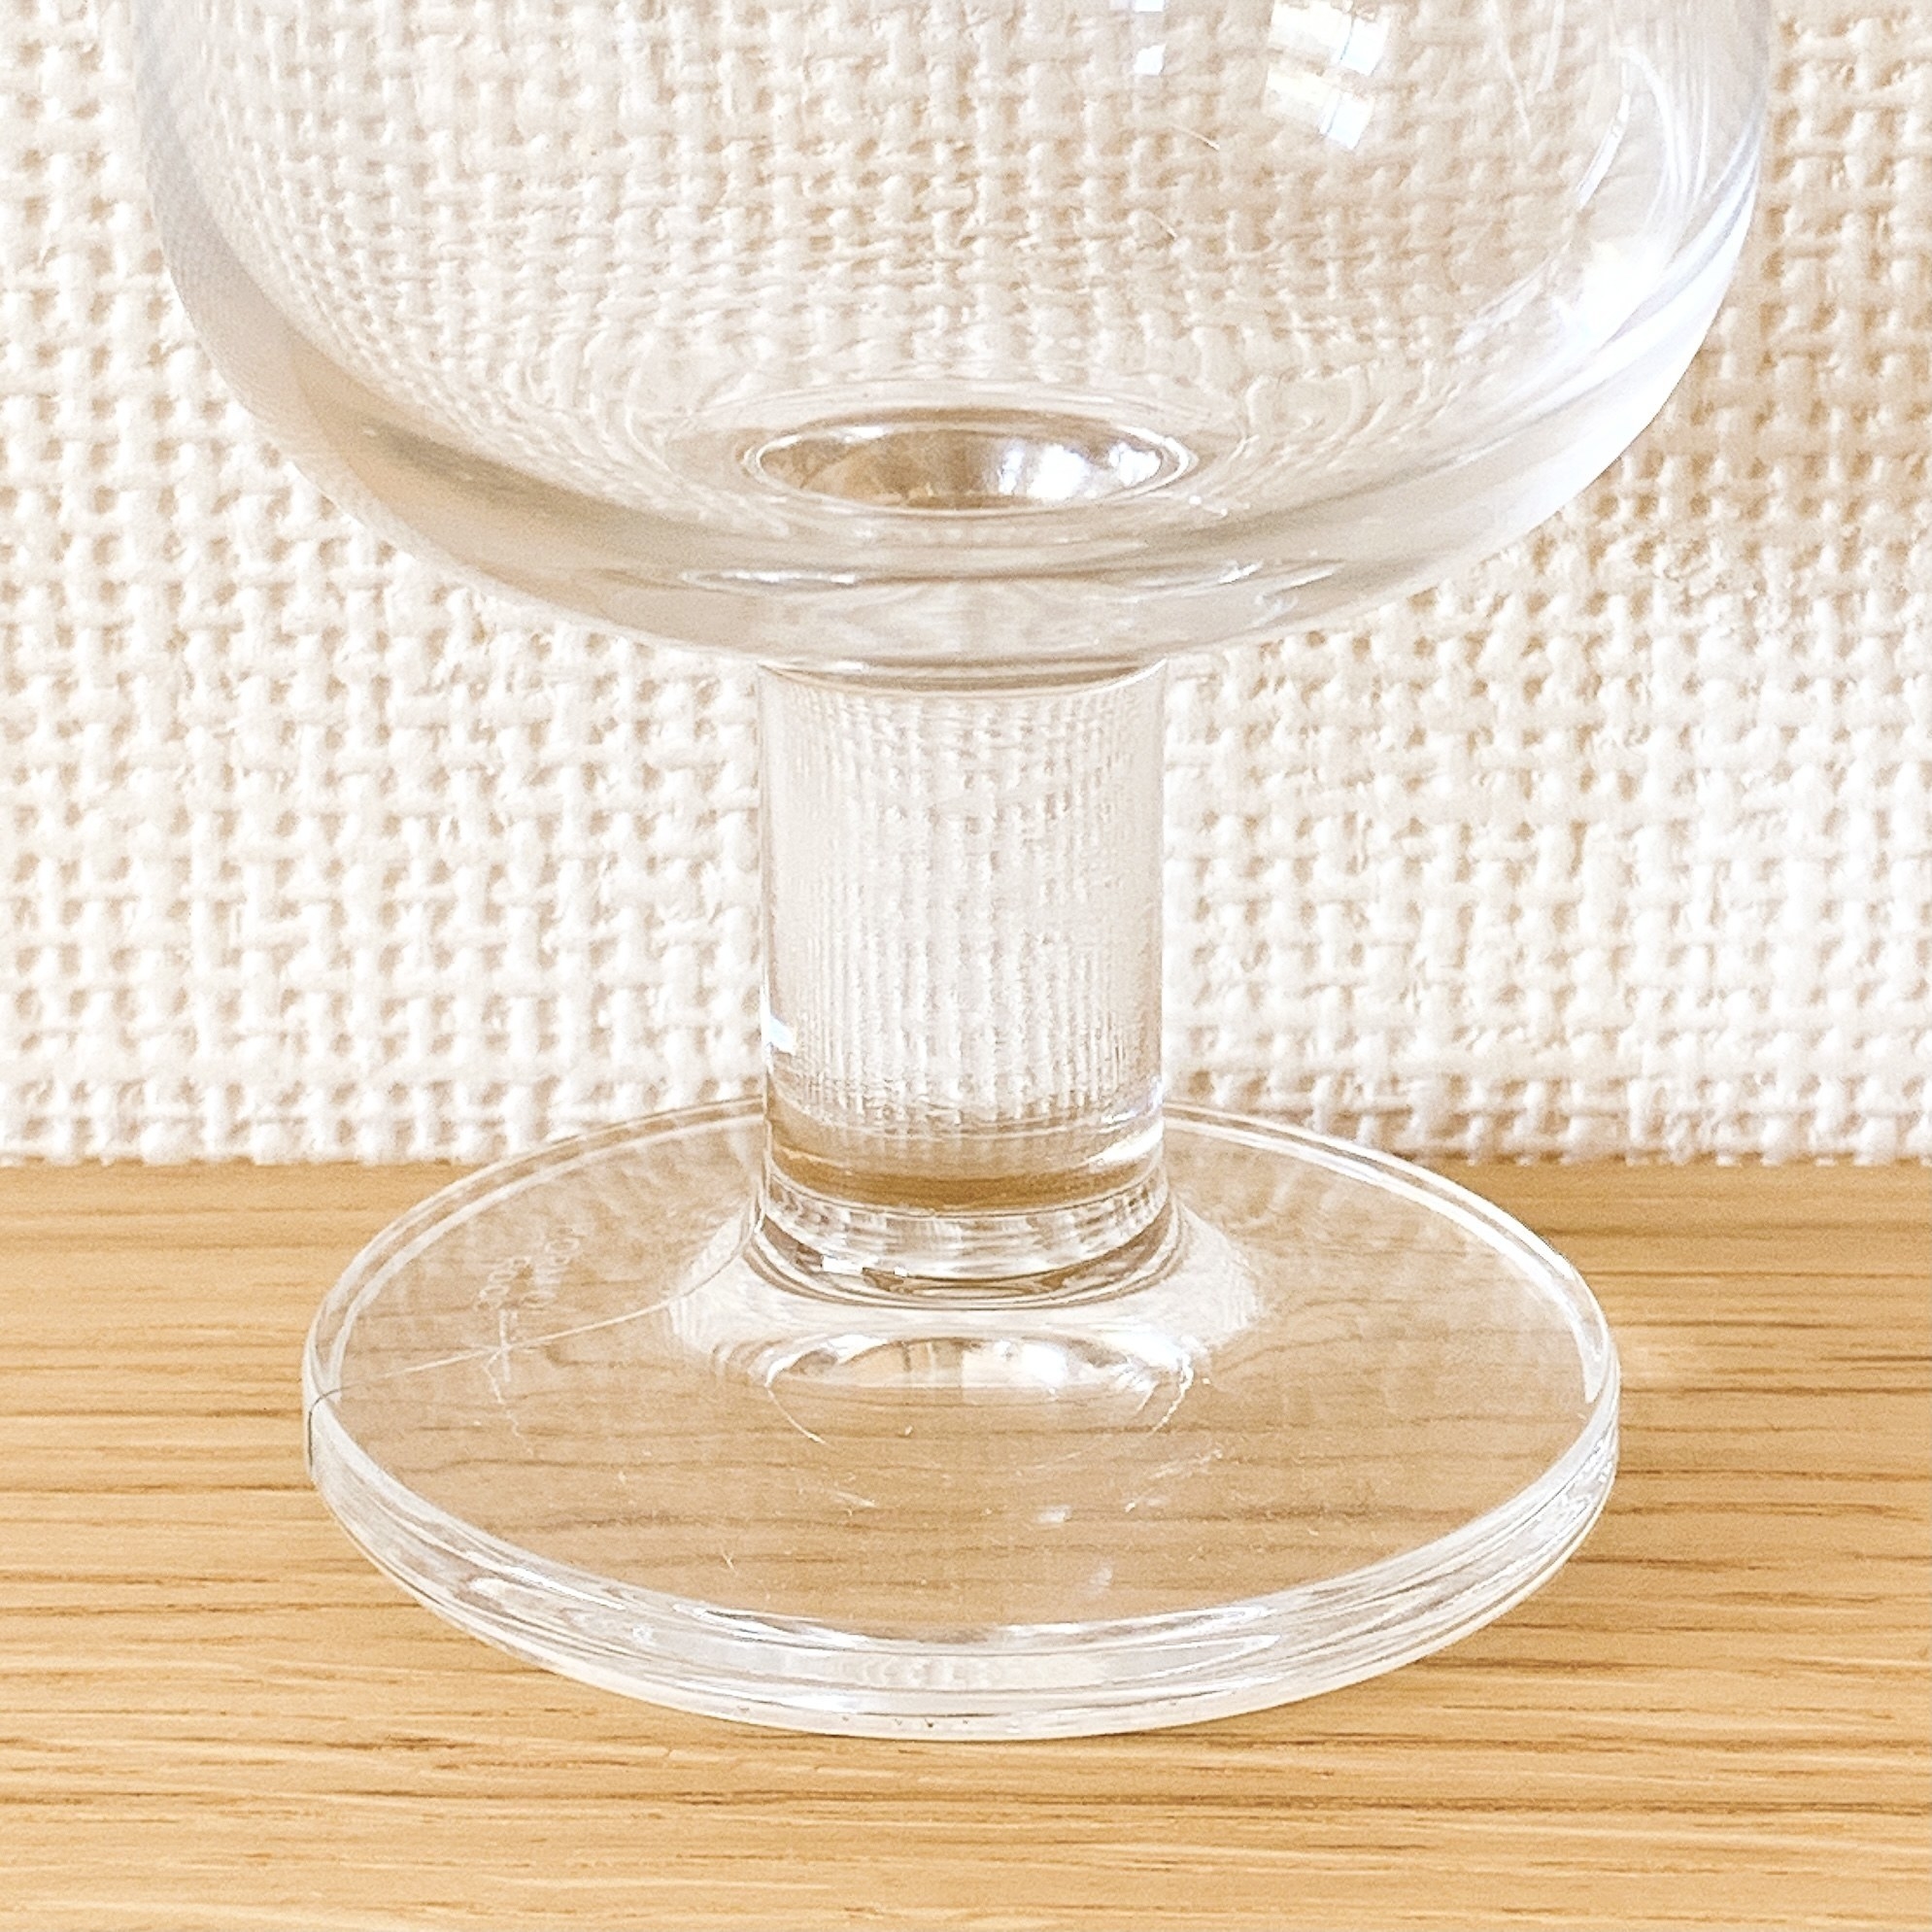 無印良品のオススメのグラス「強化ガラス ステムグラス L」